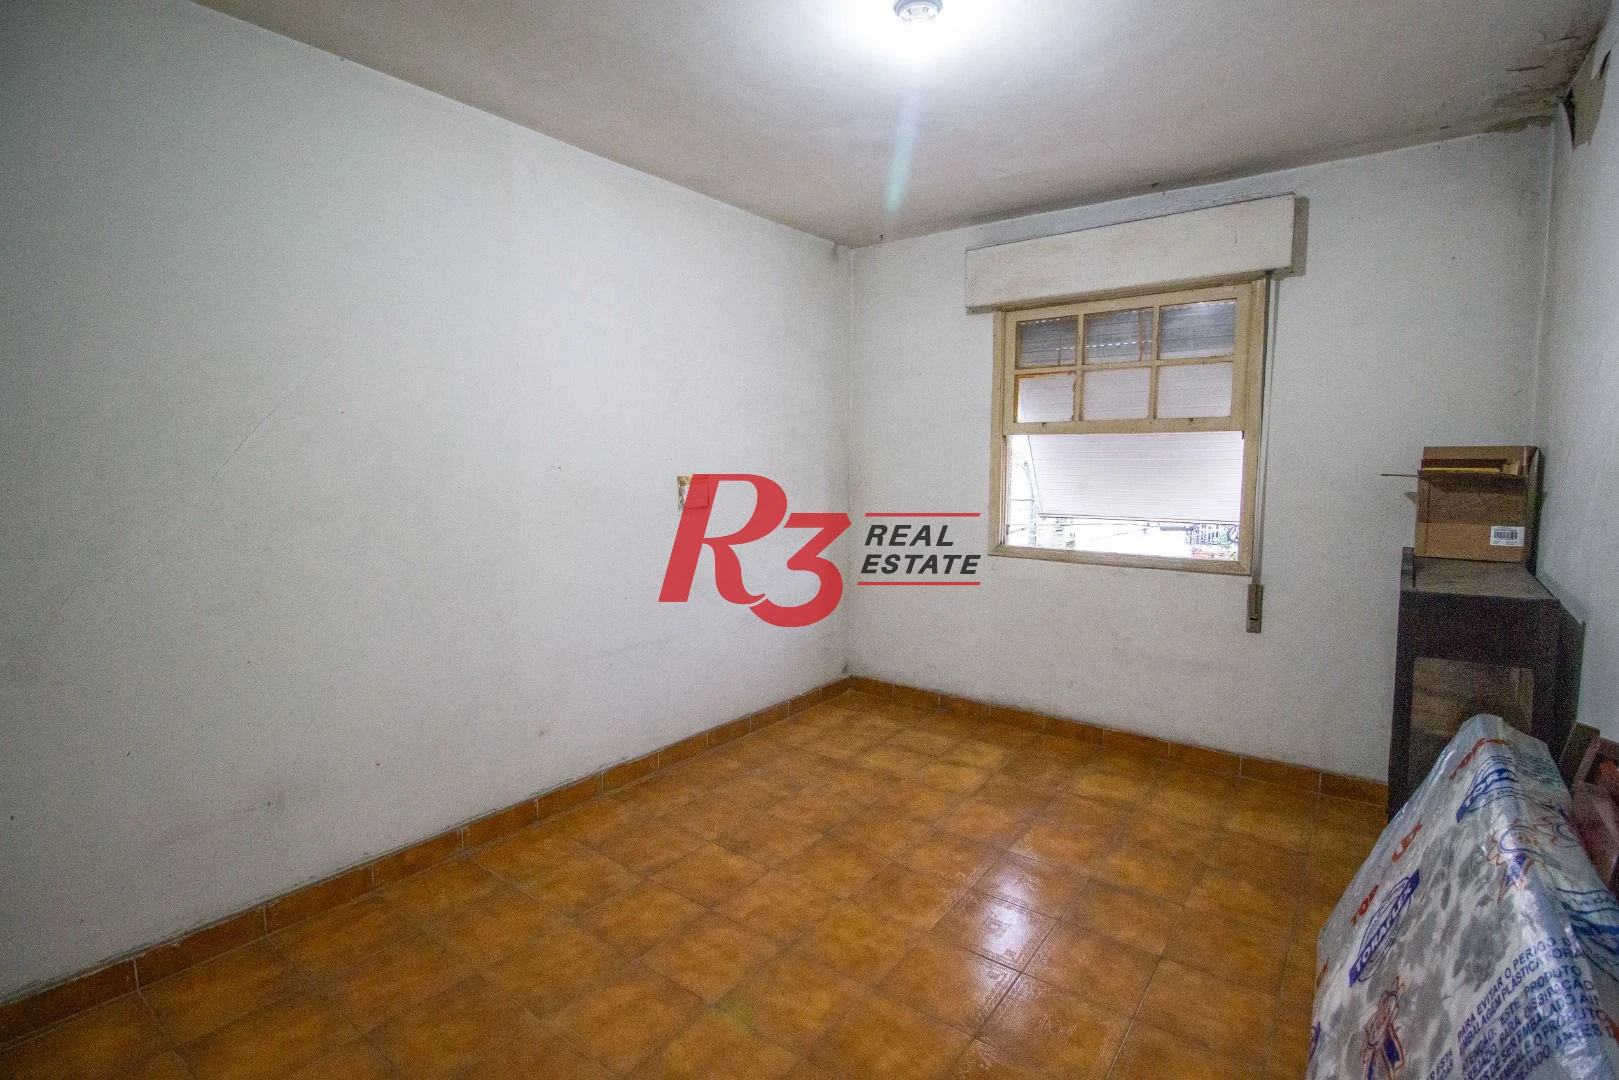 Apartamento à venda, 83 m² por R$ 276.000,00 - Encruzilhada - Santos/SP